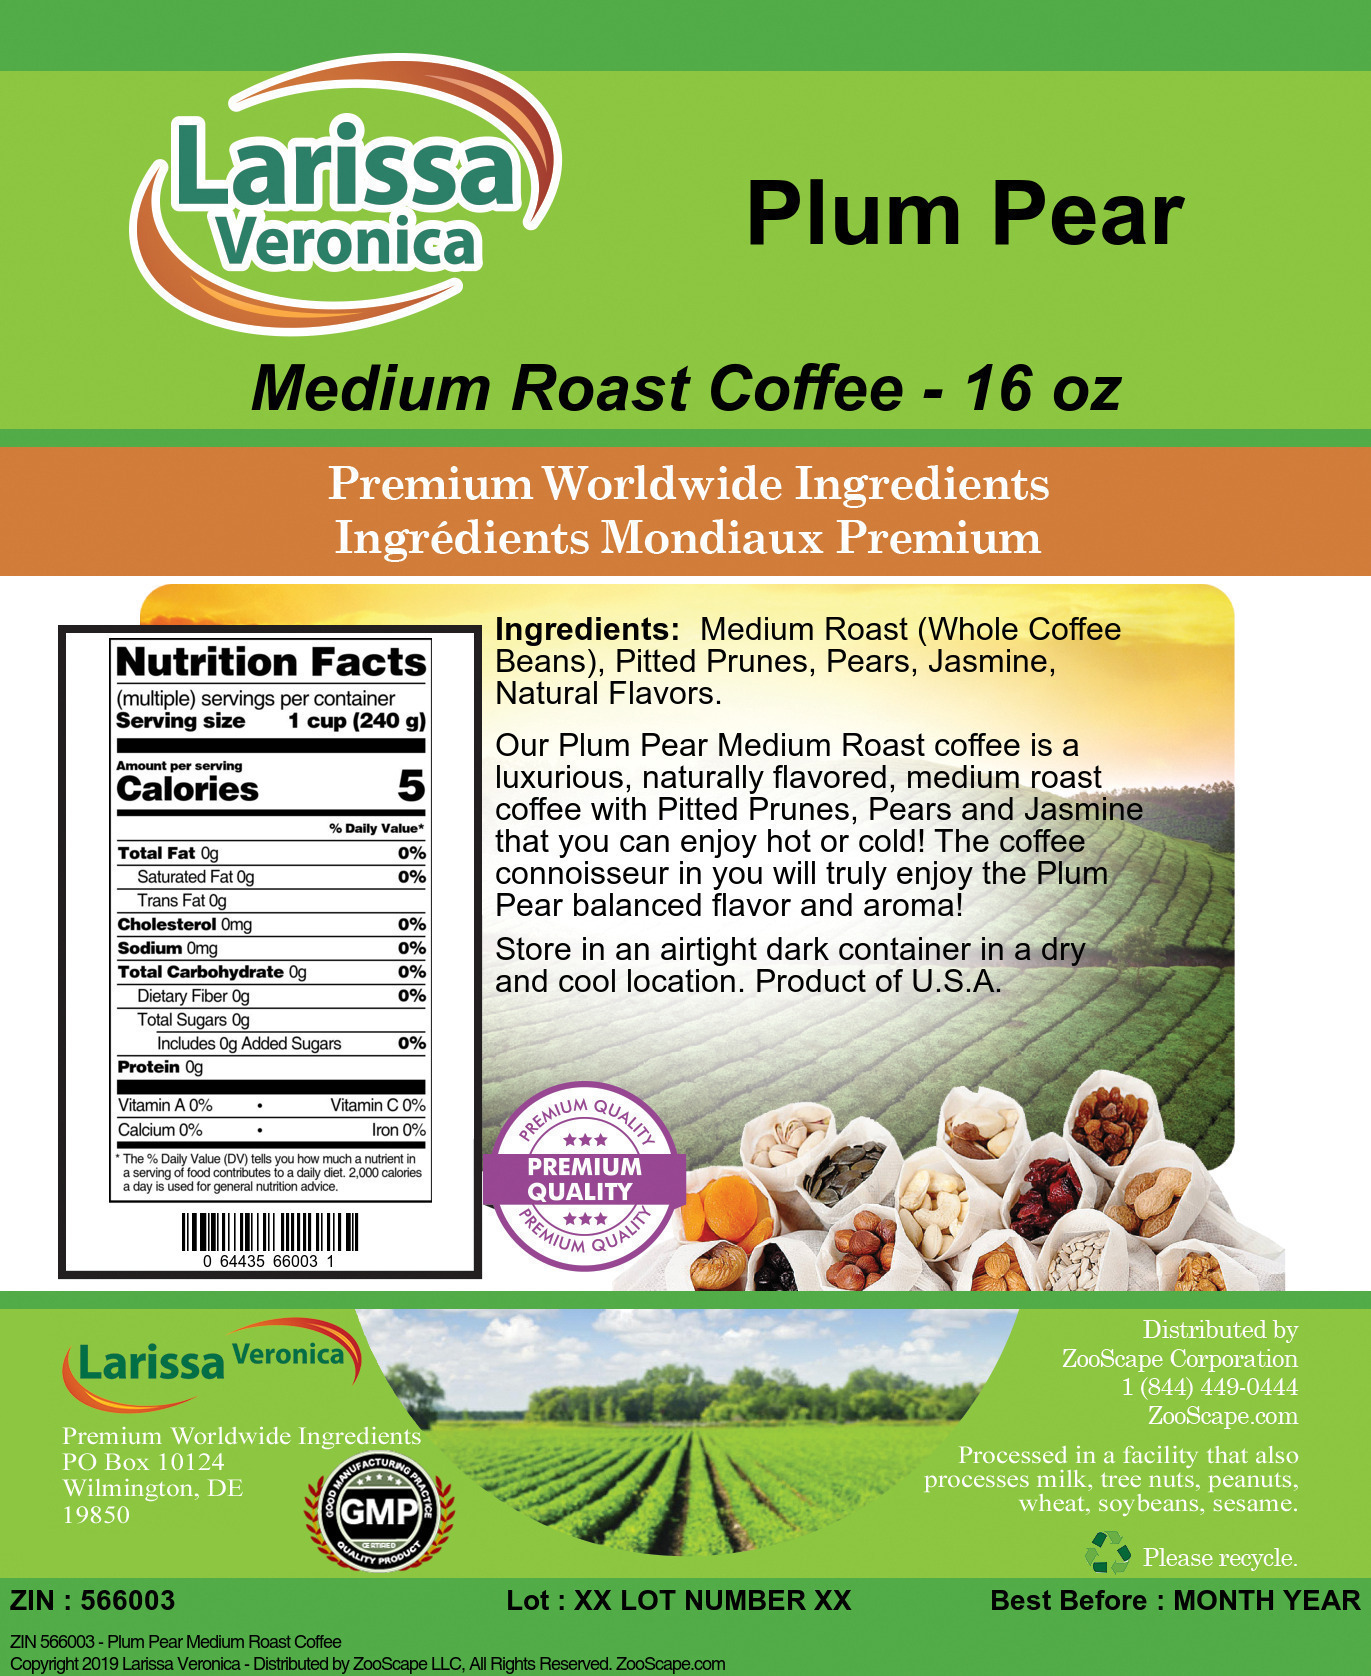 Plum Pear Medium Roast Coffee - Label